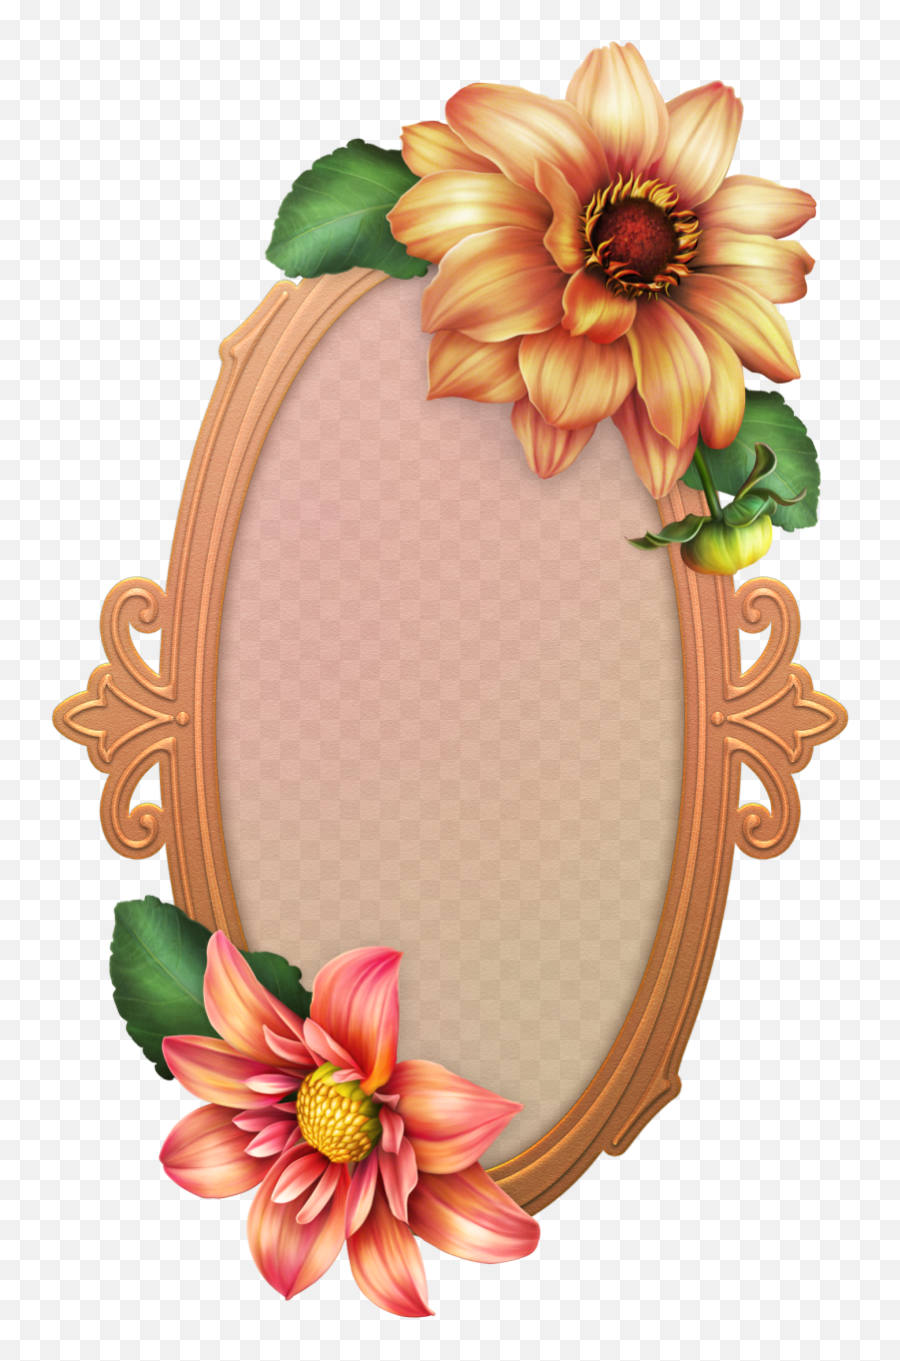 Flower Clipart Borders And Frames - Flower 3d Border Frame Design Emoji,Clipart Borders